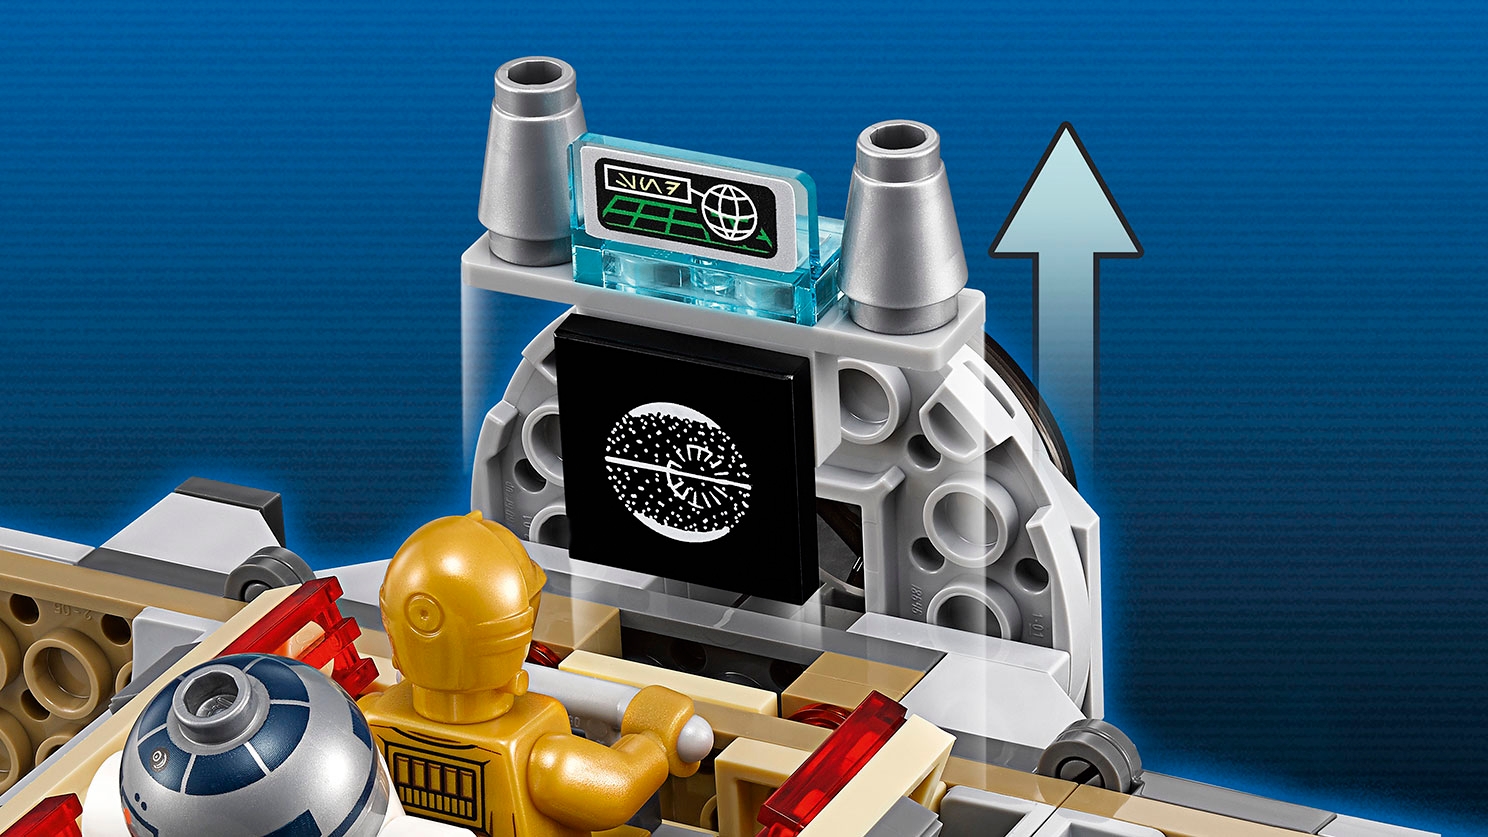 LEGO Star Wars Droid Escape Pod 75136